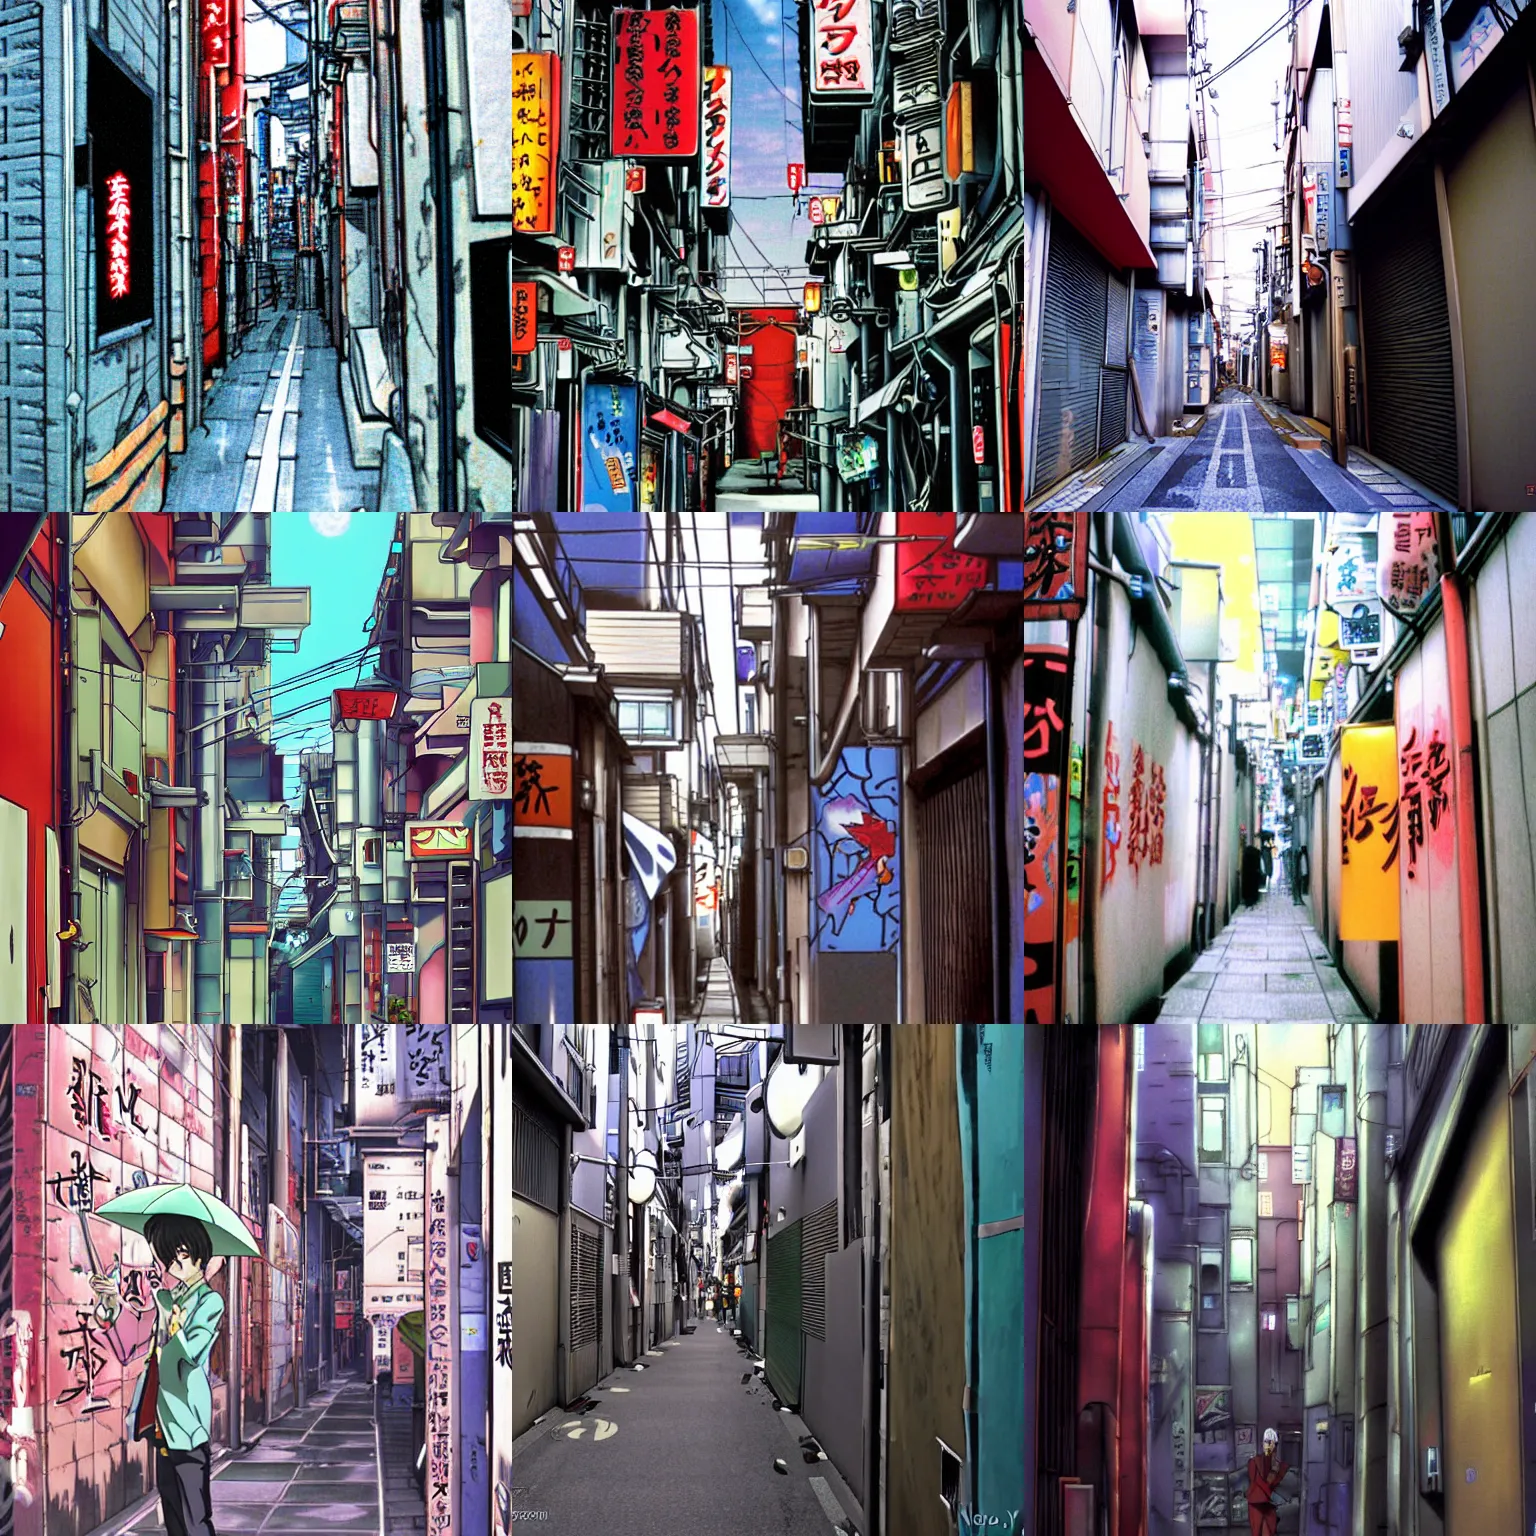 Prompt: tokyo alleyway by neon - genesis - evangelion, beautiful